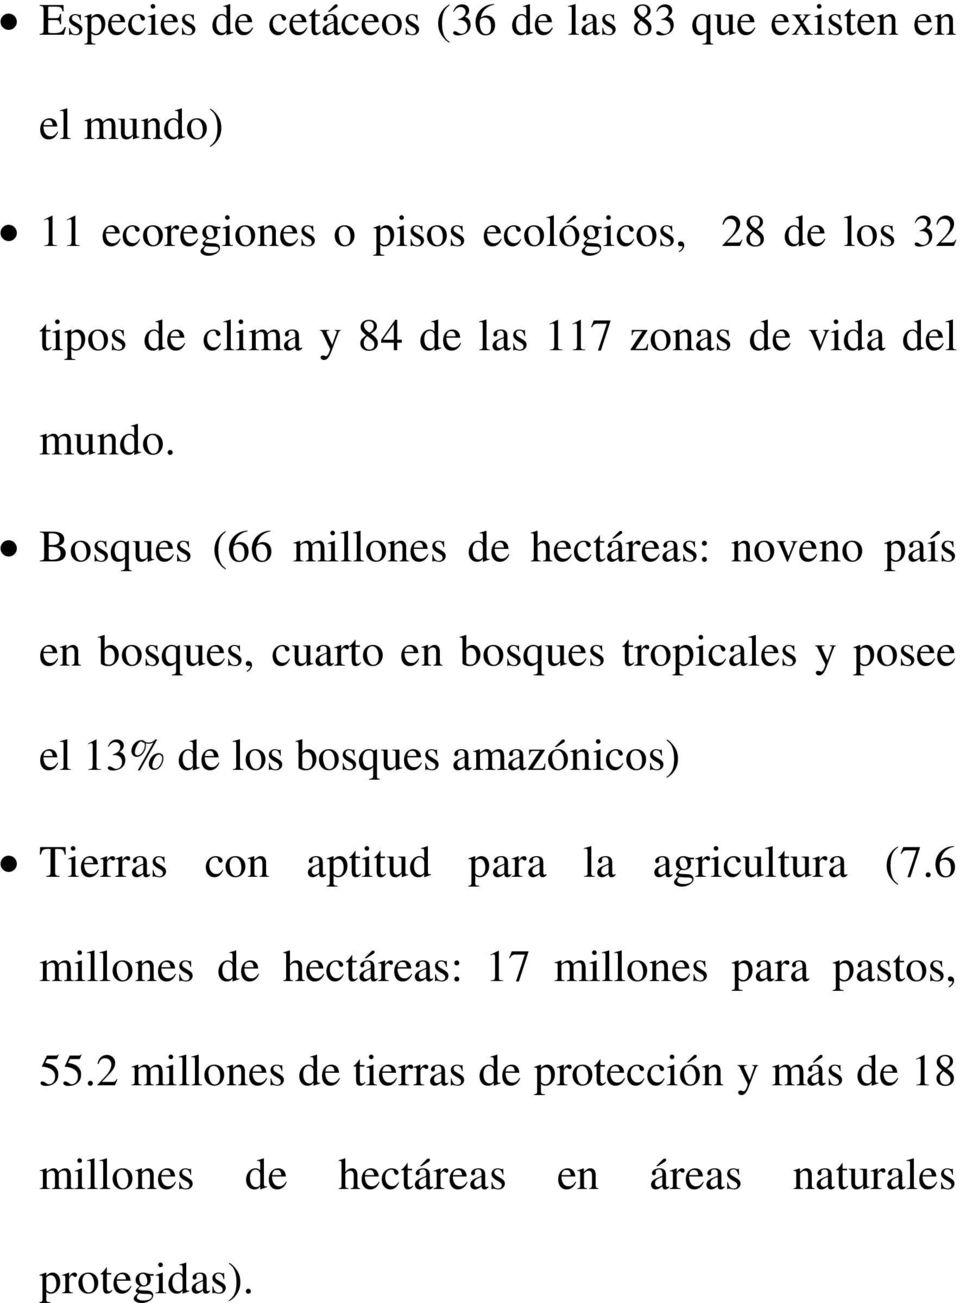 Bosques (66 millones de hectáreas: noveno país en bosques, cuarto en bosques tropicales y posee el 13% de los bosques